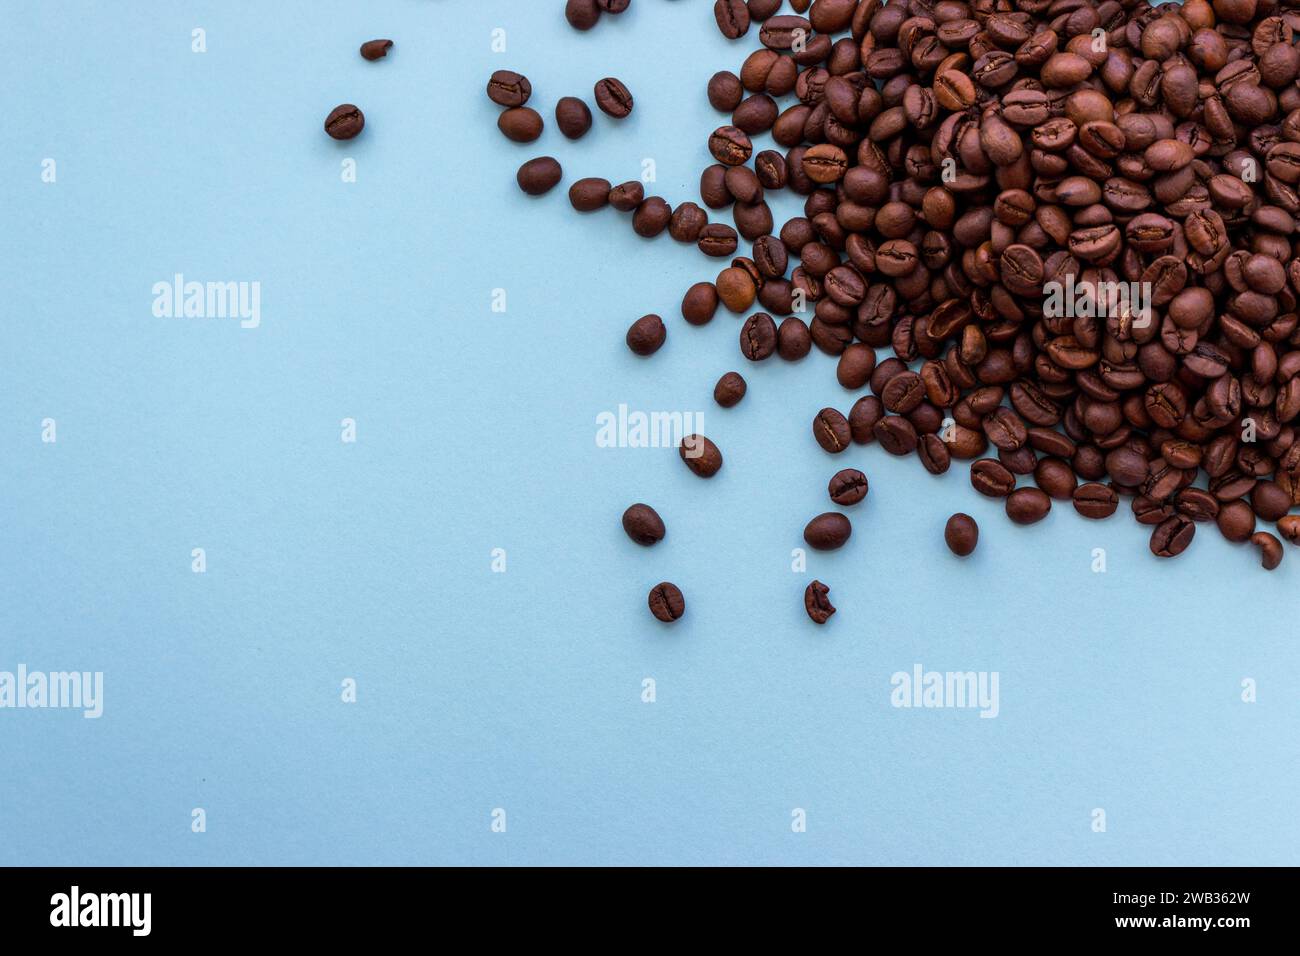 Pile de grains de café brun foncé torréfiés sur fond bleu avec espace de copie. Concept de boisson aromatique. Fond du petit déjeuner. Gros plan café avec espace de copie Banque D'Images